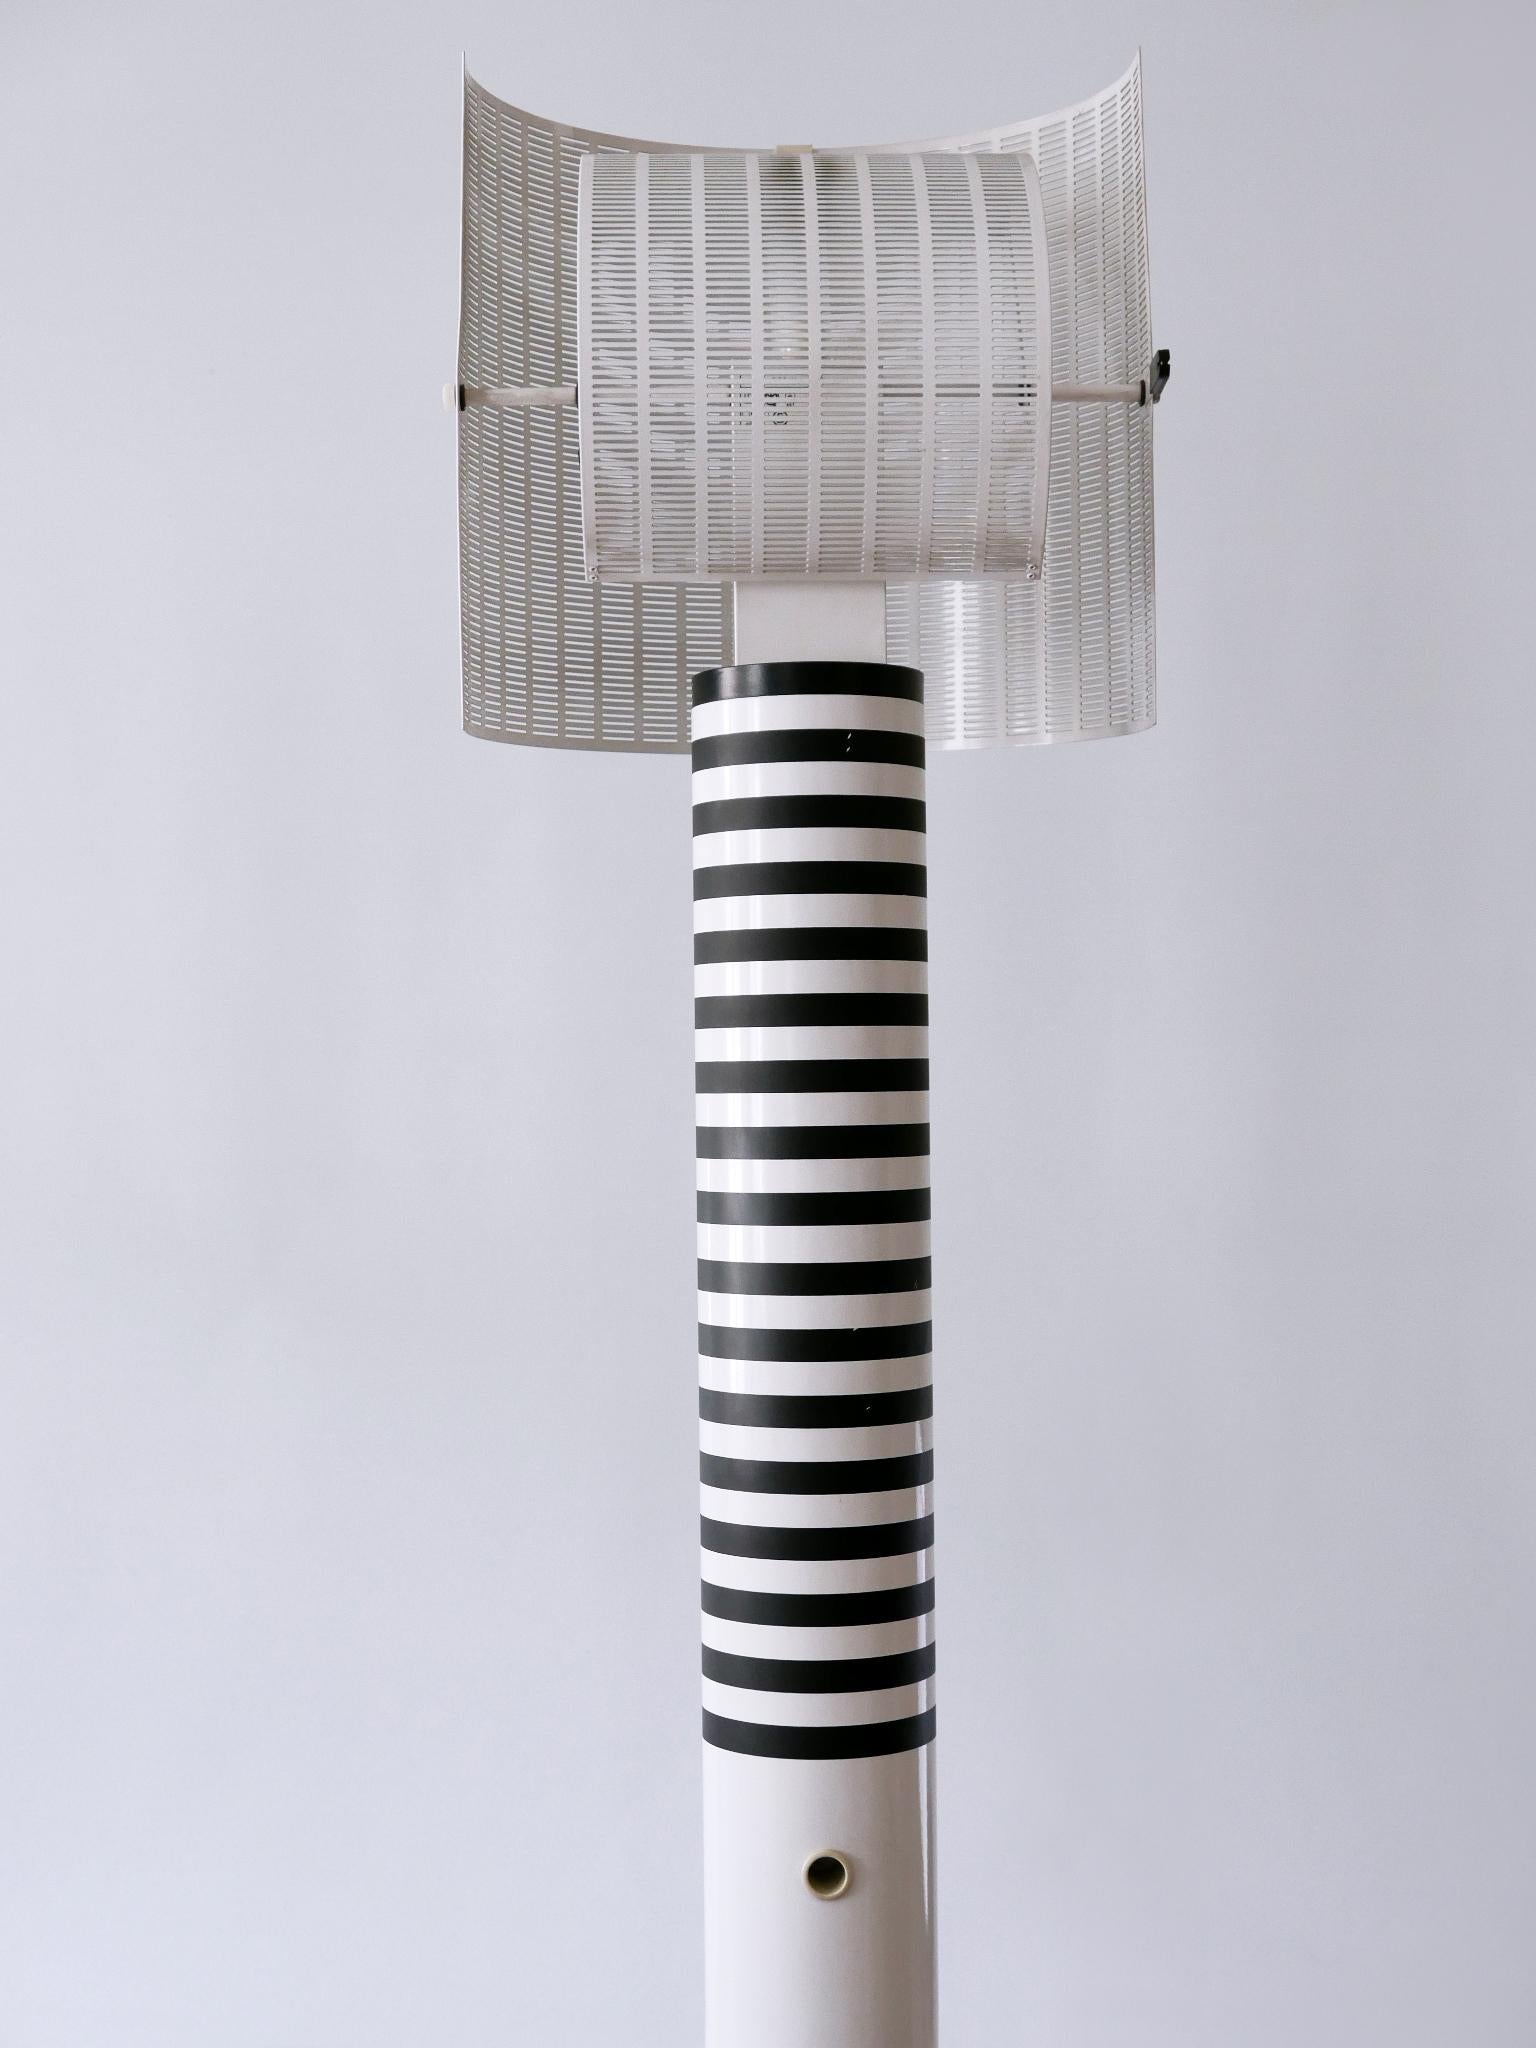 Monumental Postmodern Shogun Floor Lamp by Mario Botta for Artemide Italy 1980s For Sale 7